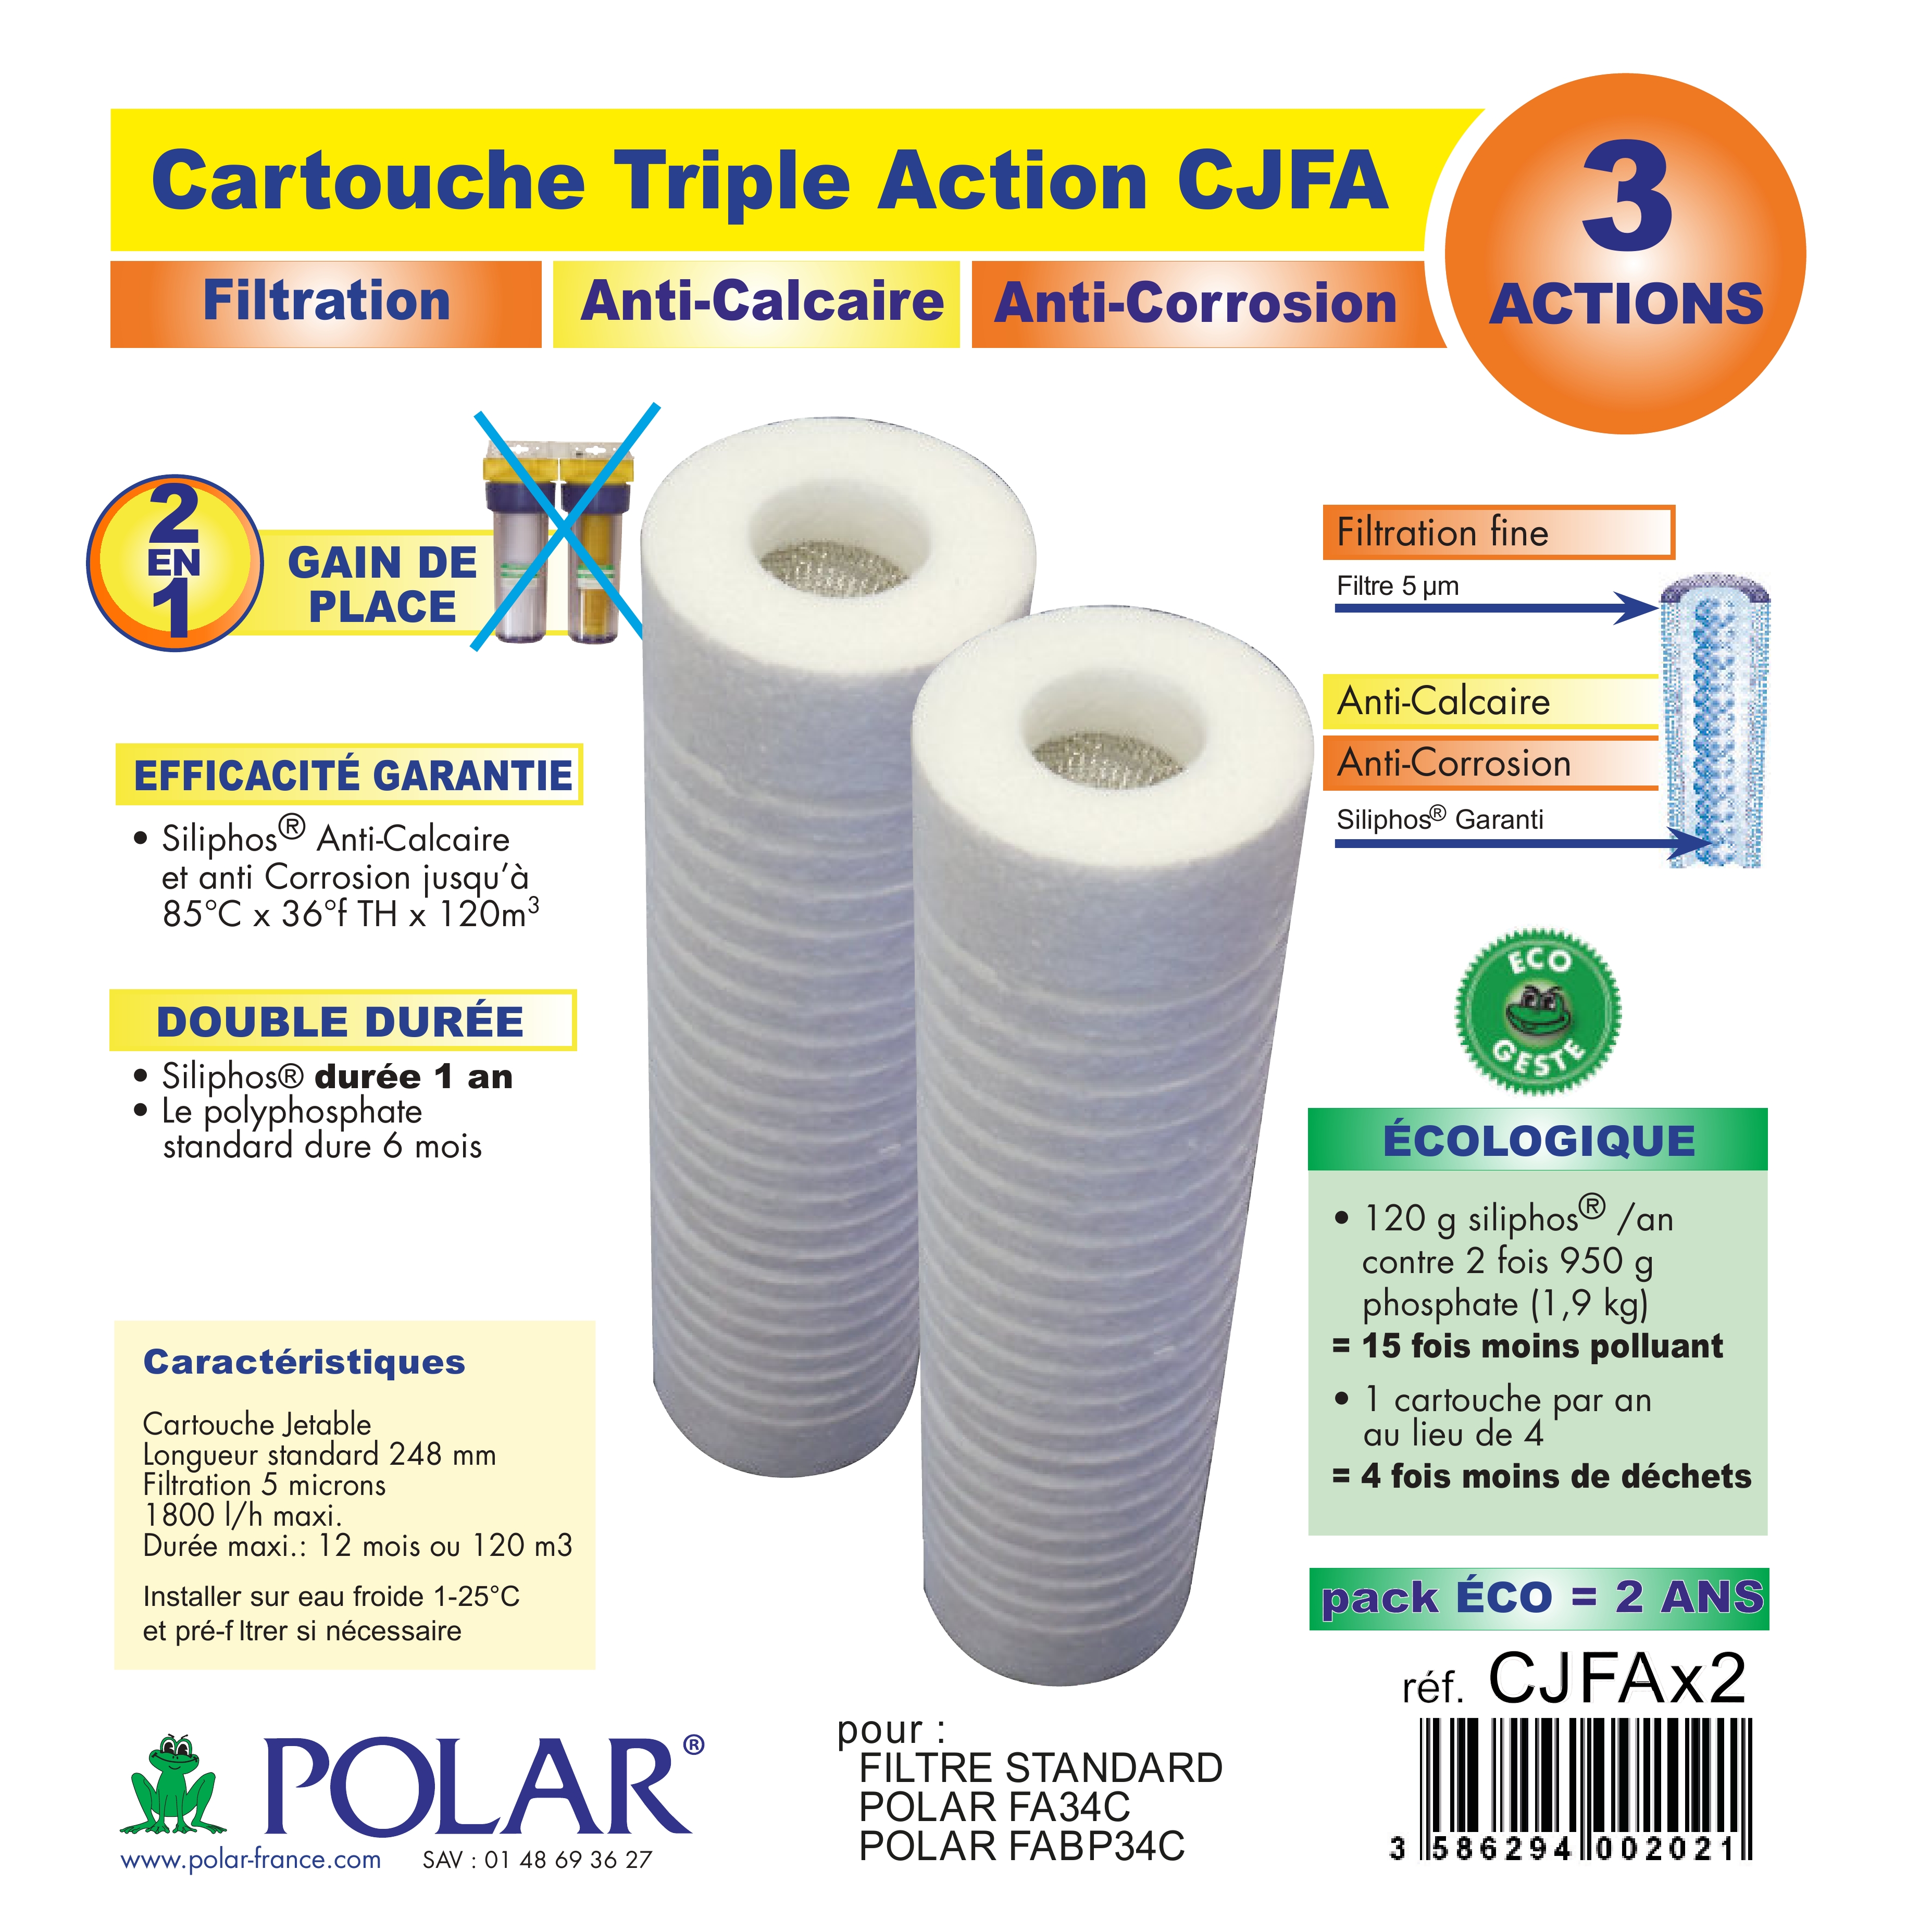 CJFAX2-POLAR] Lot de 2 cartouches filtrantes - anti calcaire/corrosion